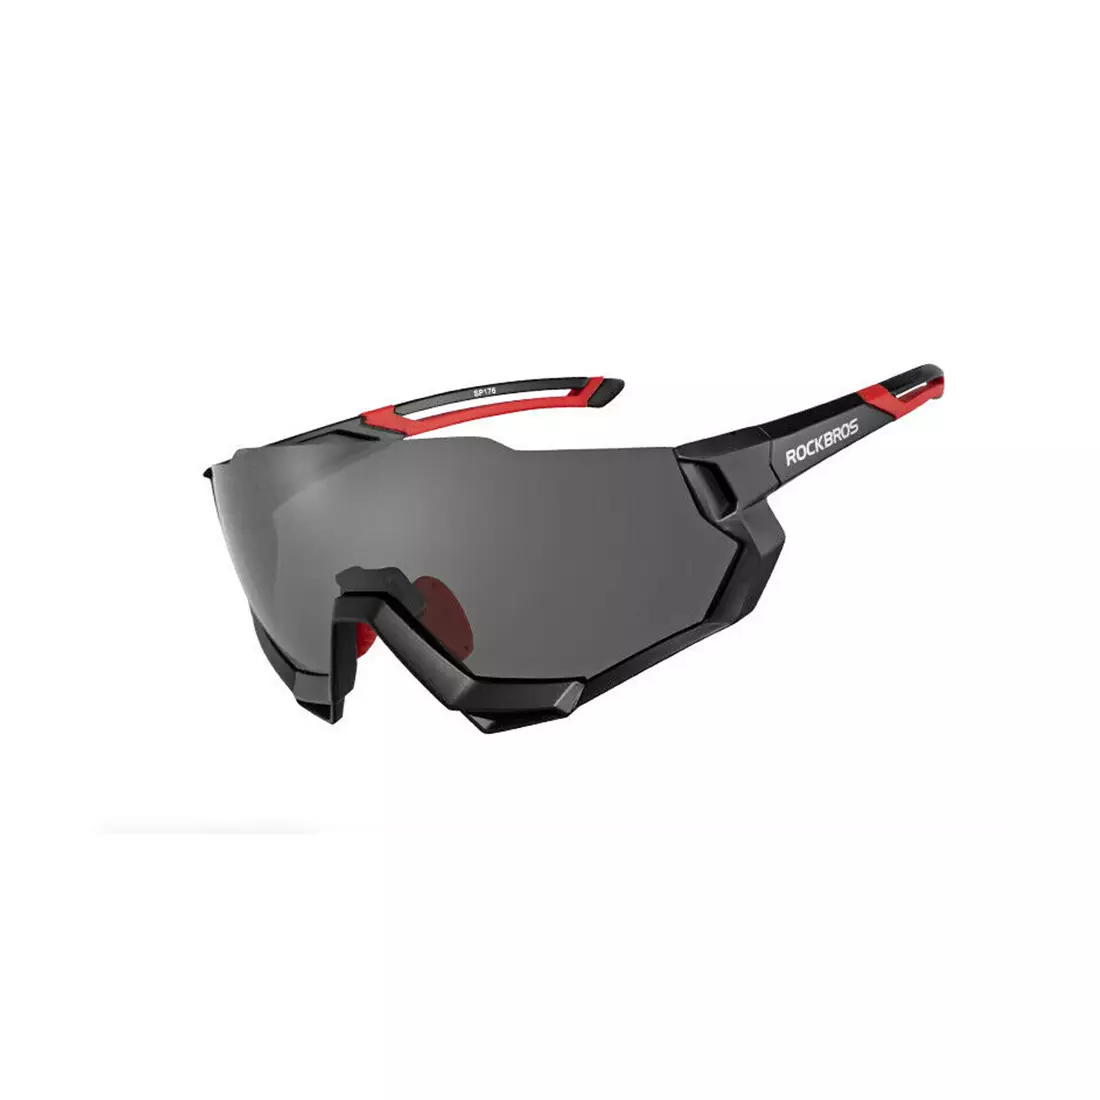 Rockbros 10131 Fahrrad-/Sportbrille mit polarisierten 5 Wechselgläsern schwarz